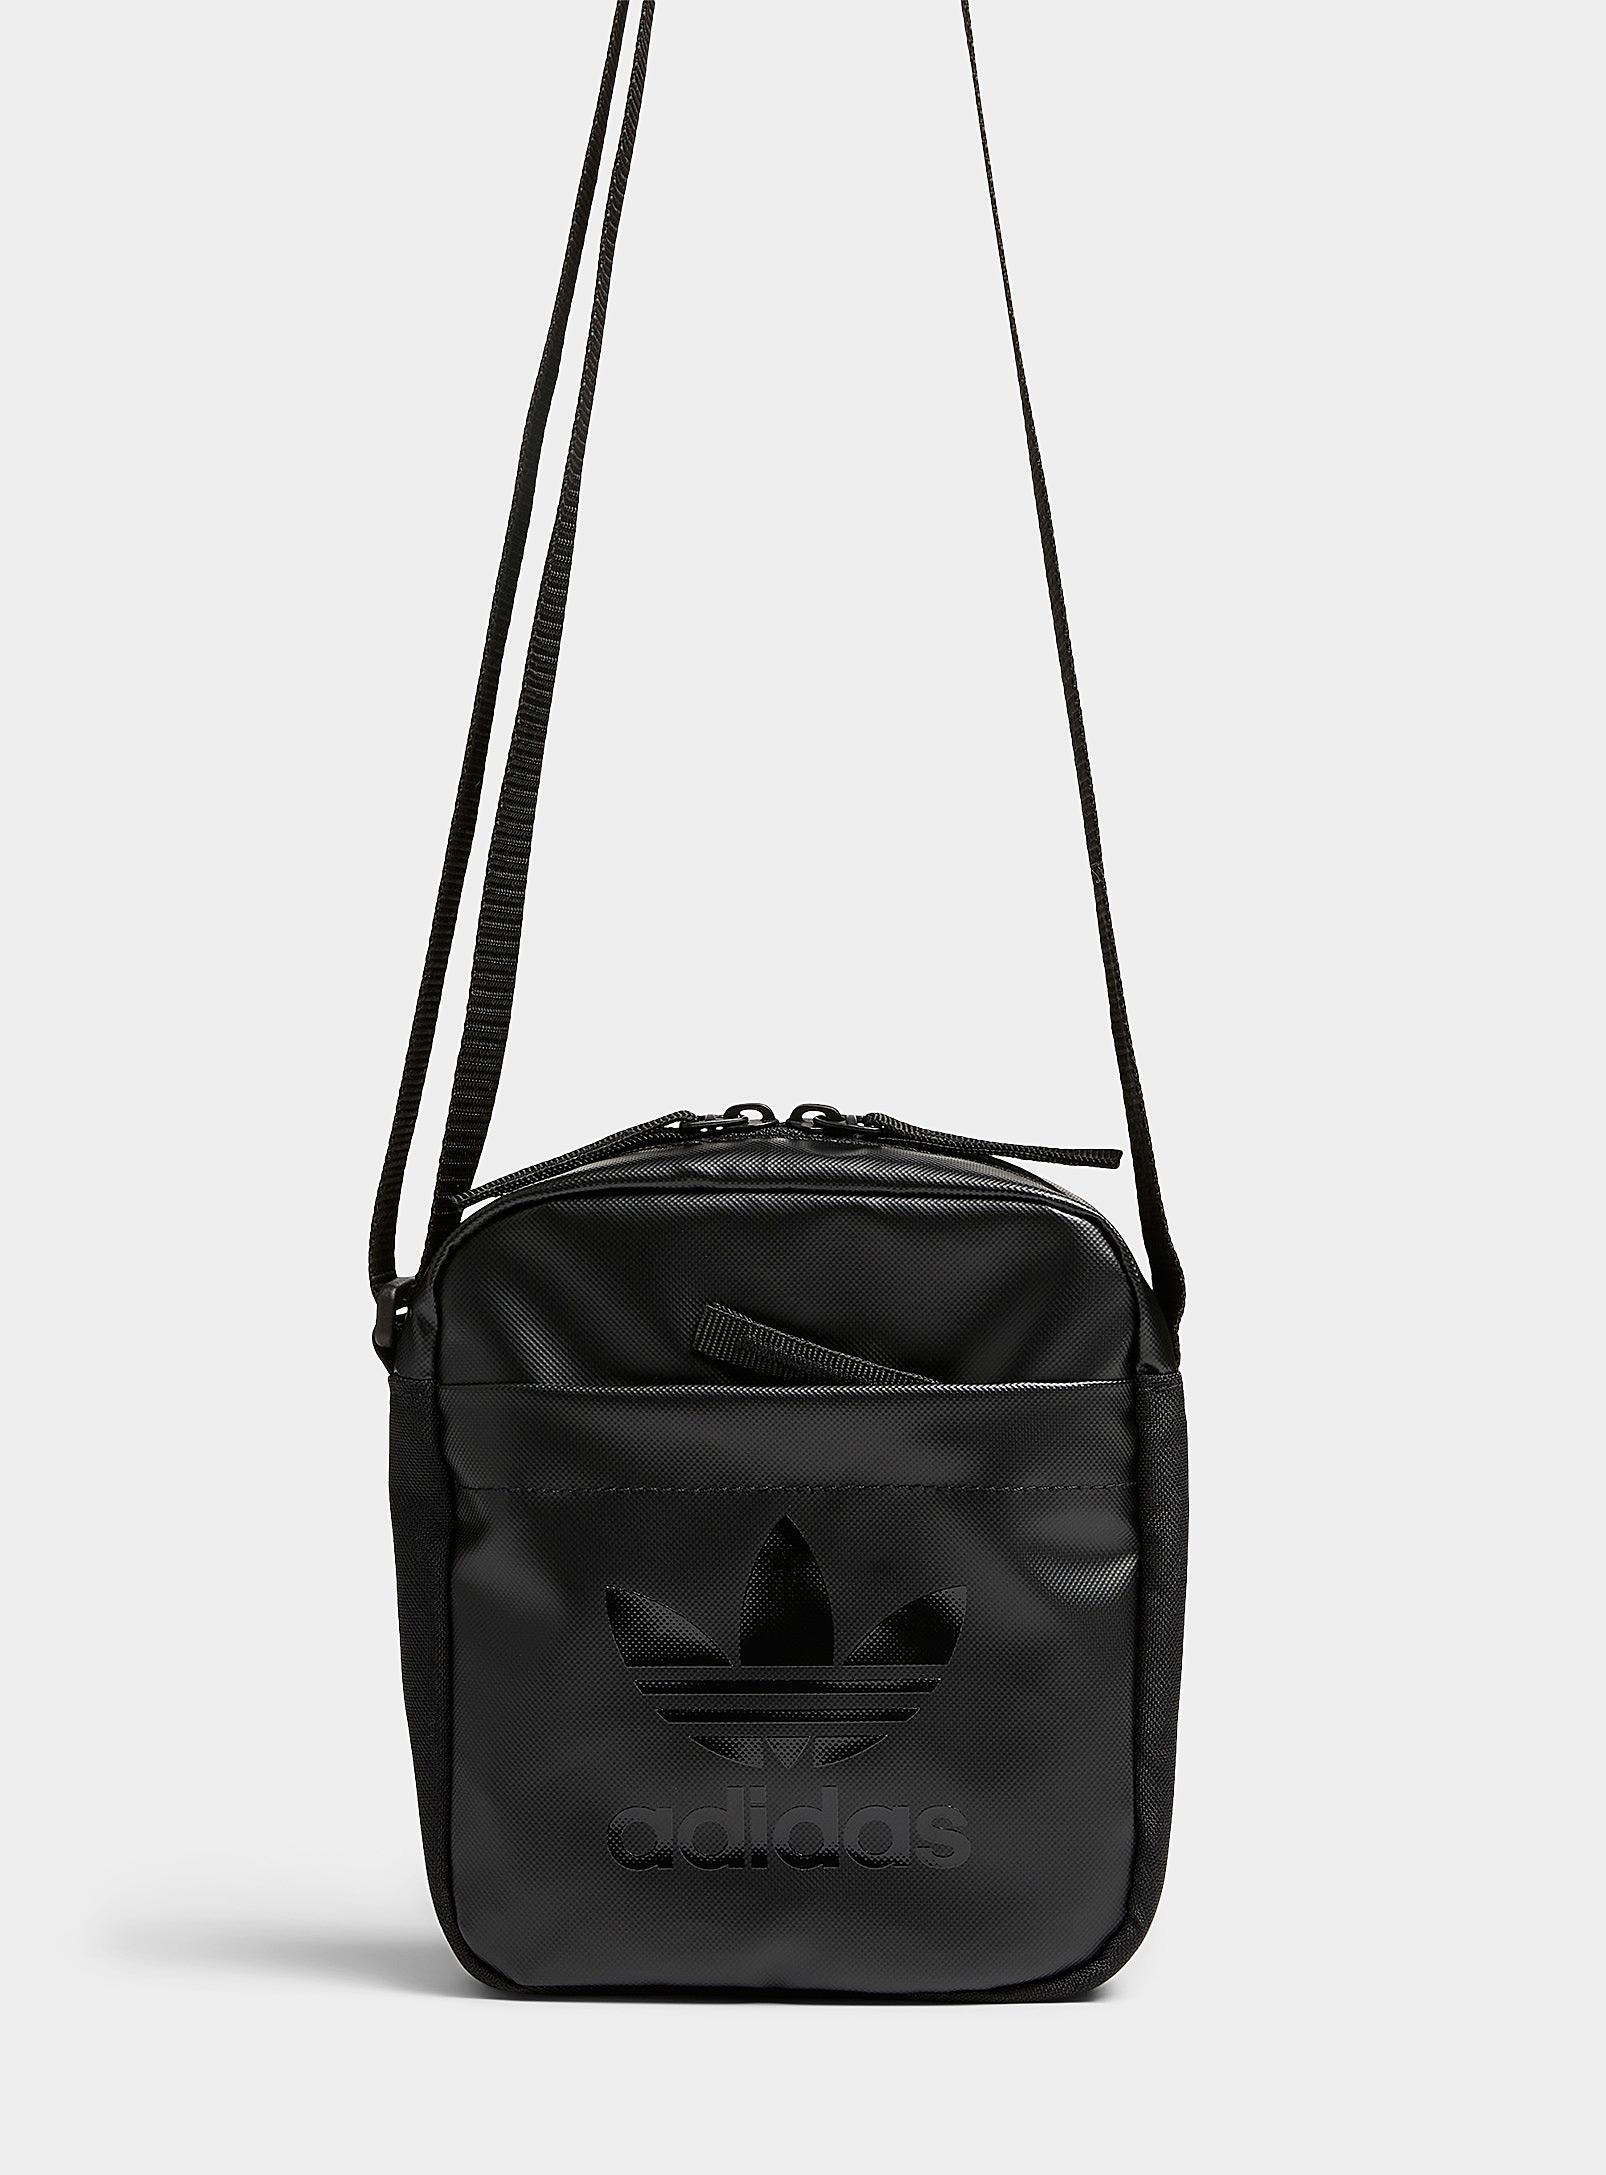 adidas Originals All Black Trefoil Shoulder Bag for Men | Lyst